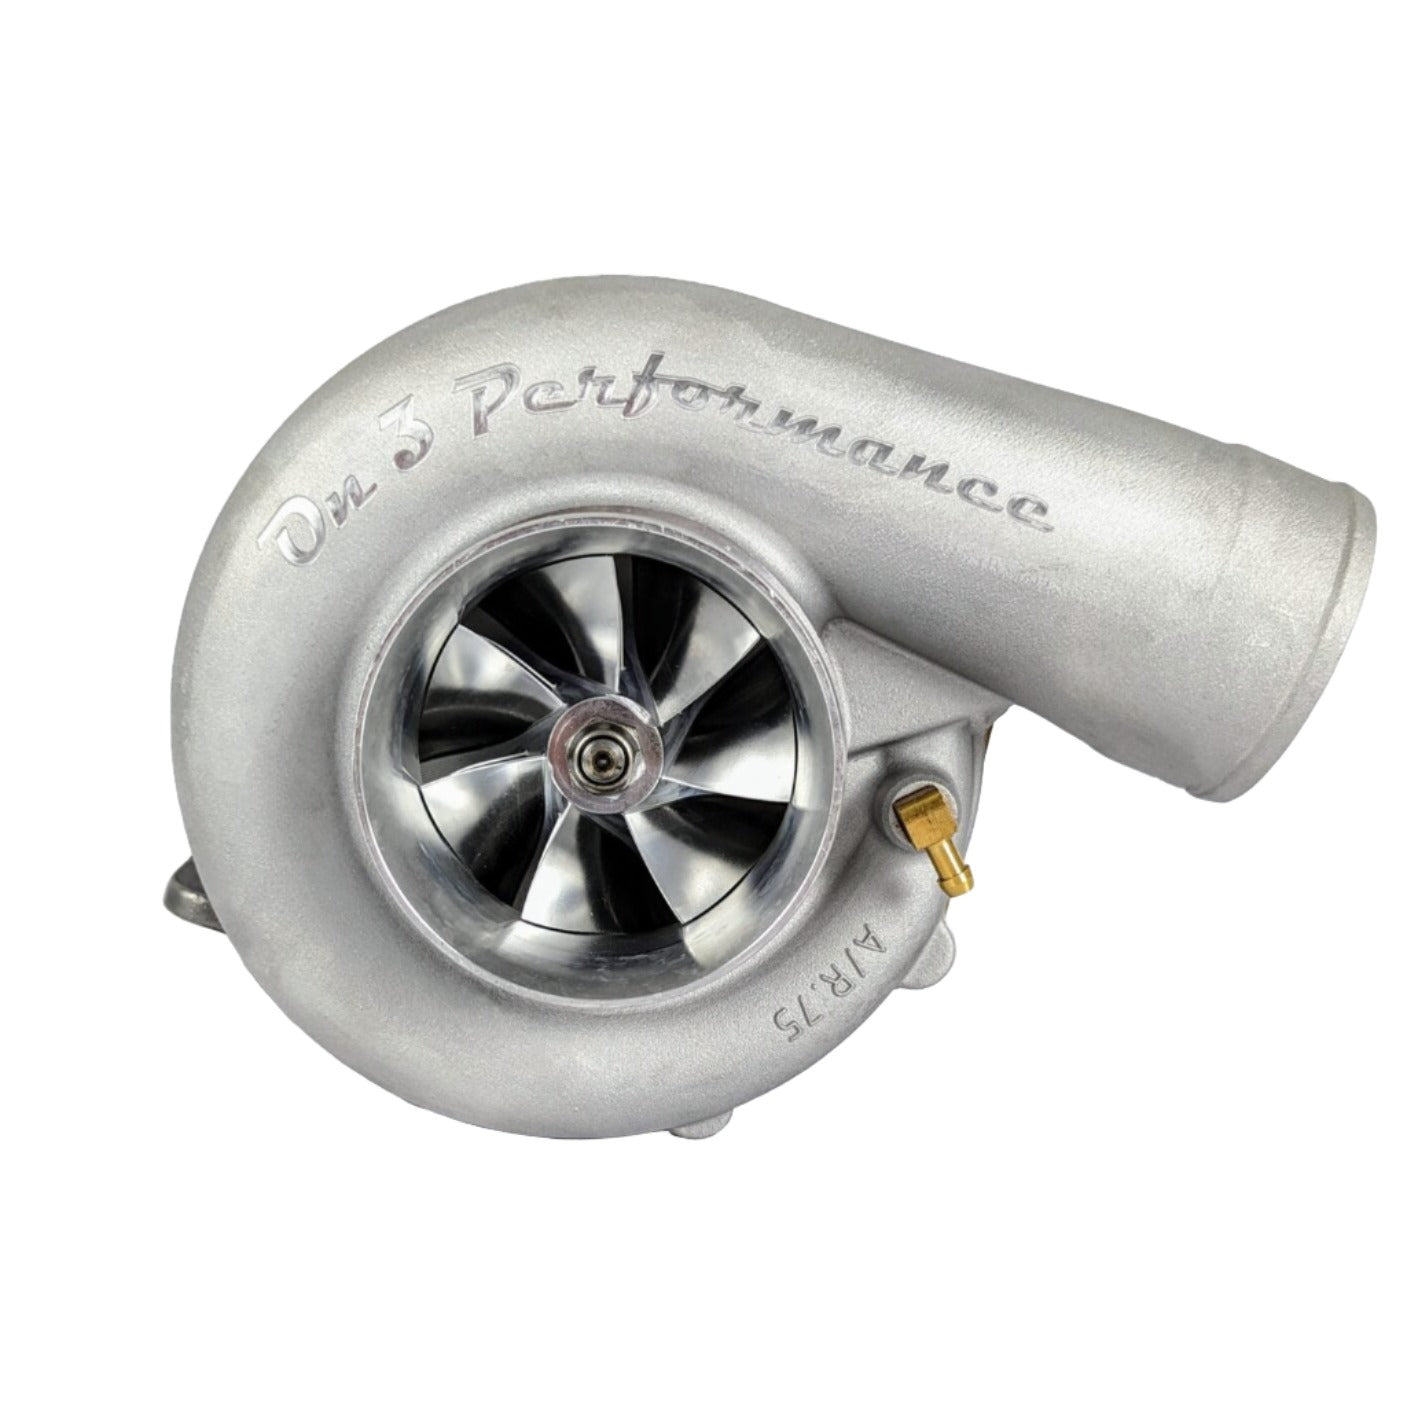 8883 Billet Wheel Ceramic Ball Bearing T4 Turbocharger 1100HP - SSTubes